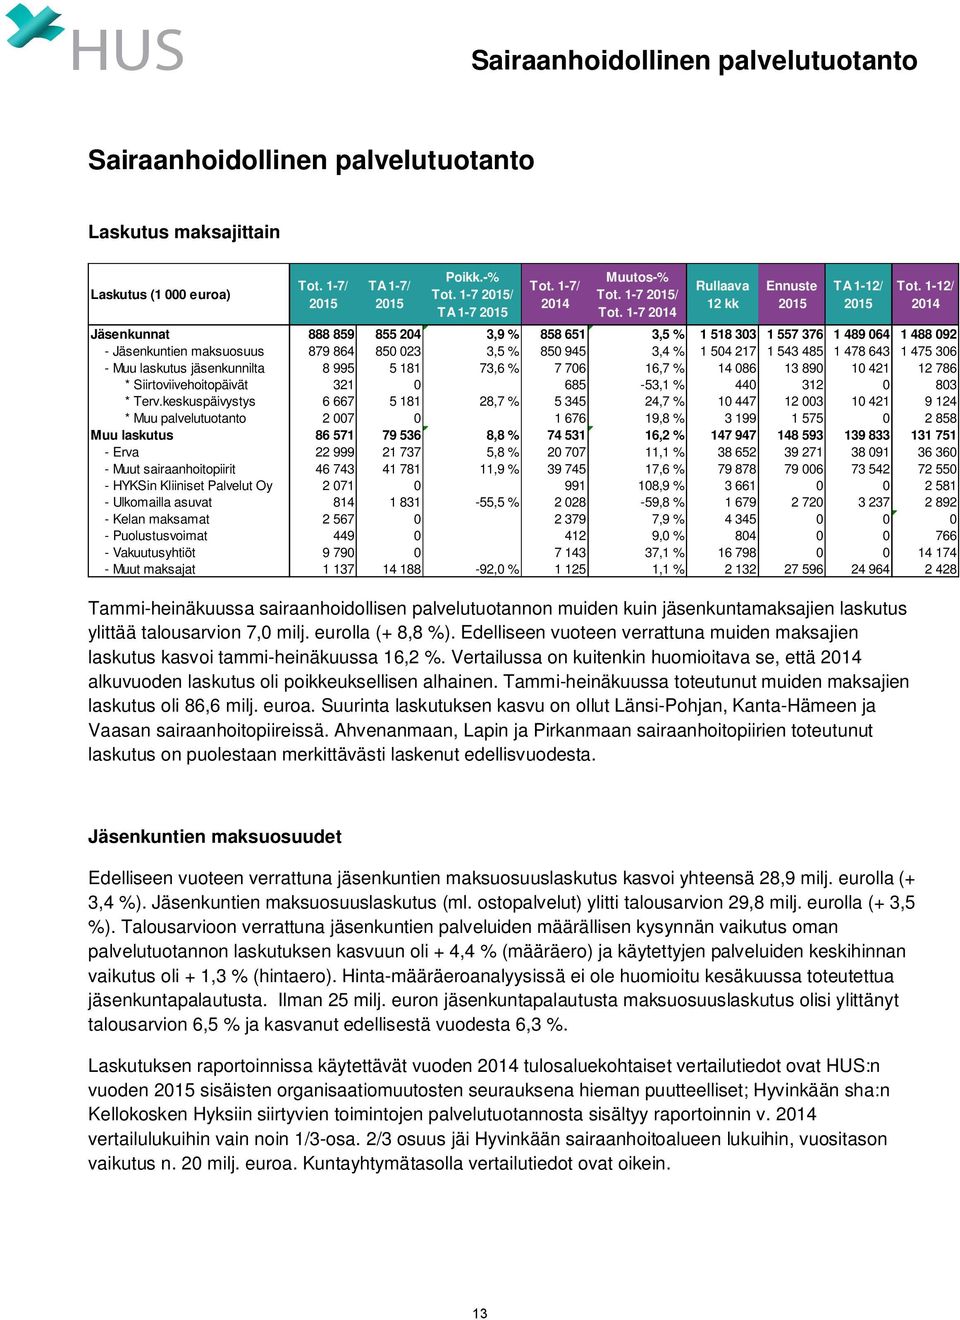 1-7 2014 Rullaava 12 kk Ennuste 2015 TA 1-12/ 2015 Tammi-heinäkuussa sairaanhoidollisen palvelutuotannon muiden kuin jäsenkuntamaksajien laskutus ylittää talousarvion 7,0 milj. eurolla (+ 8,8 %).